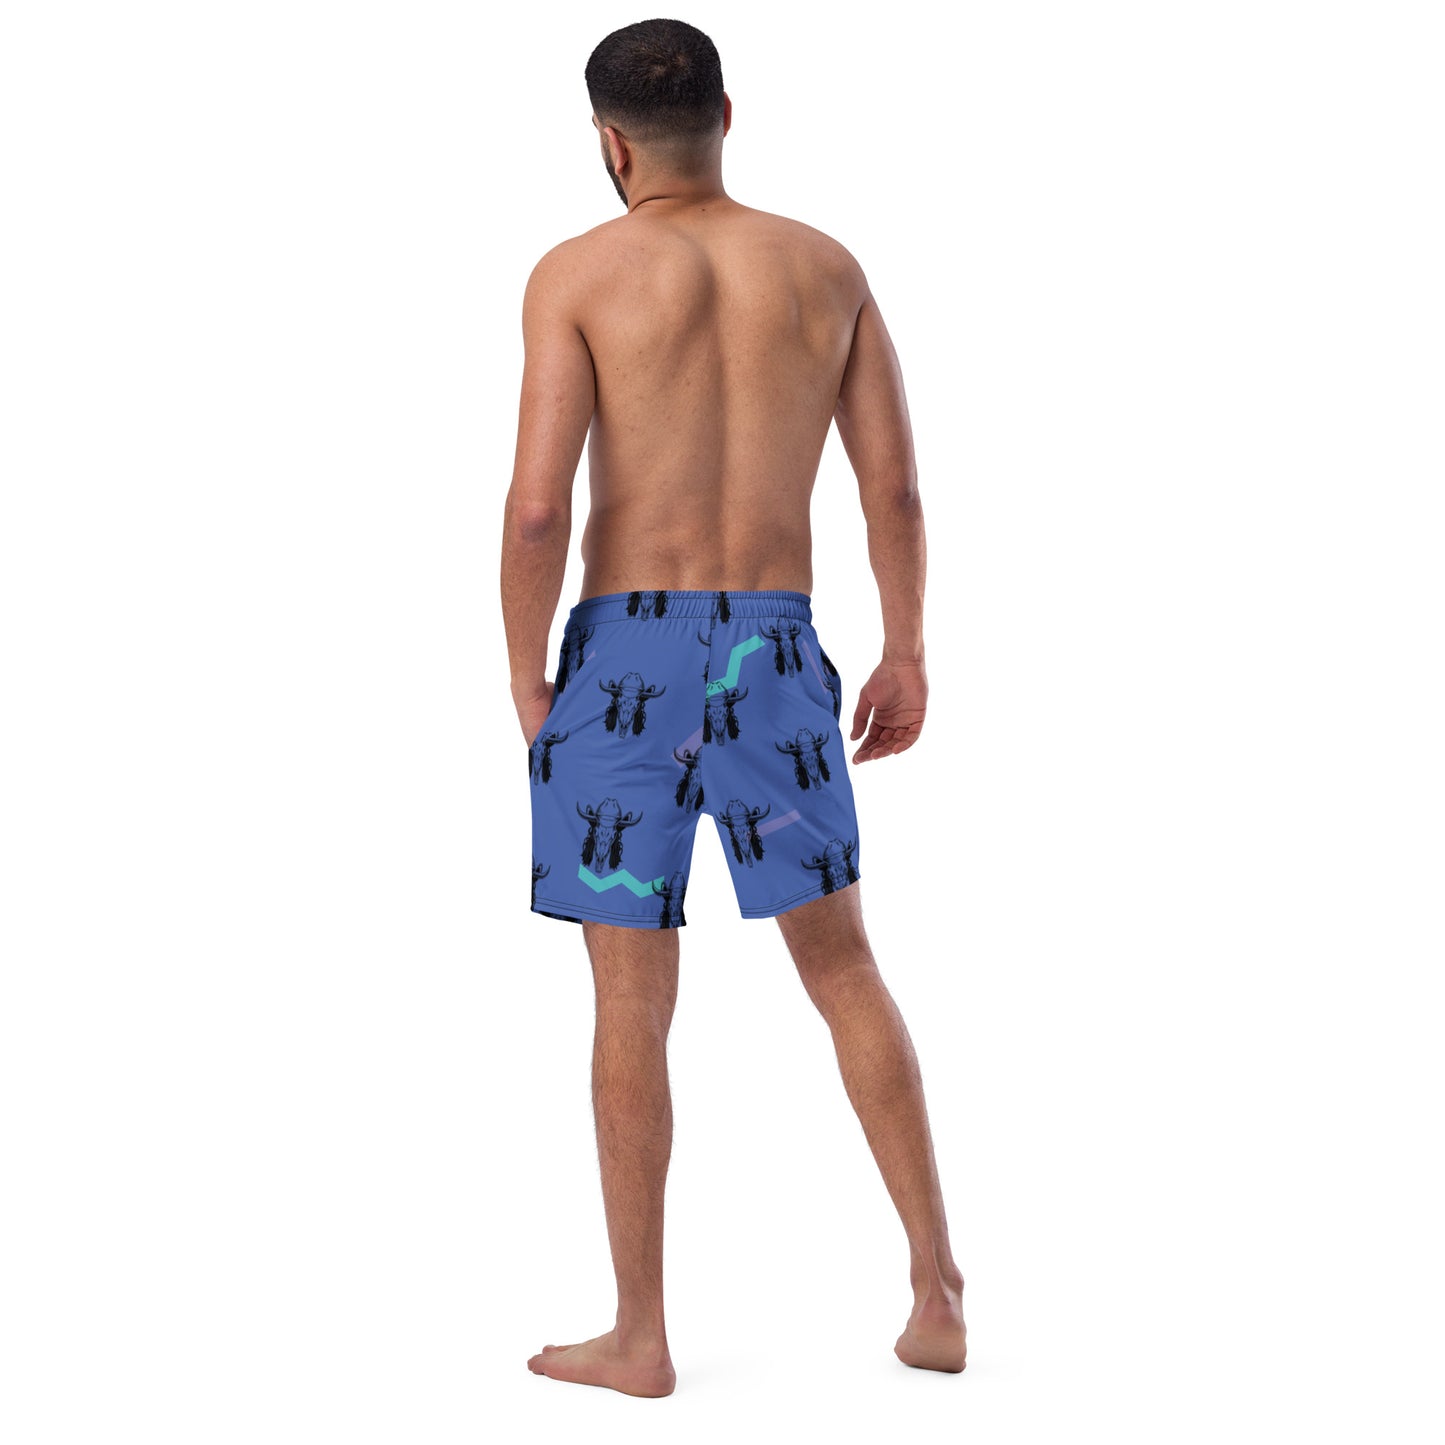 Yeehaw Mullet Cowboy Men's Swim Trunks - #swimsuit, #swimwear, men's, swim, swim shorts, swim trunks, swim wear, swimming, trunks -  - Baha Ranch Western Wear